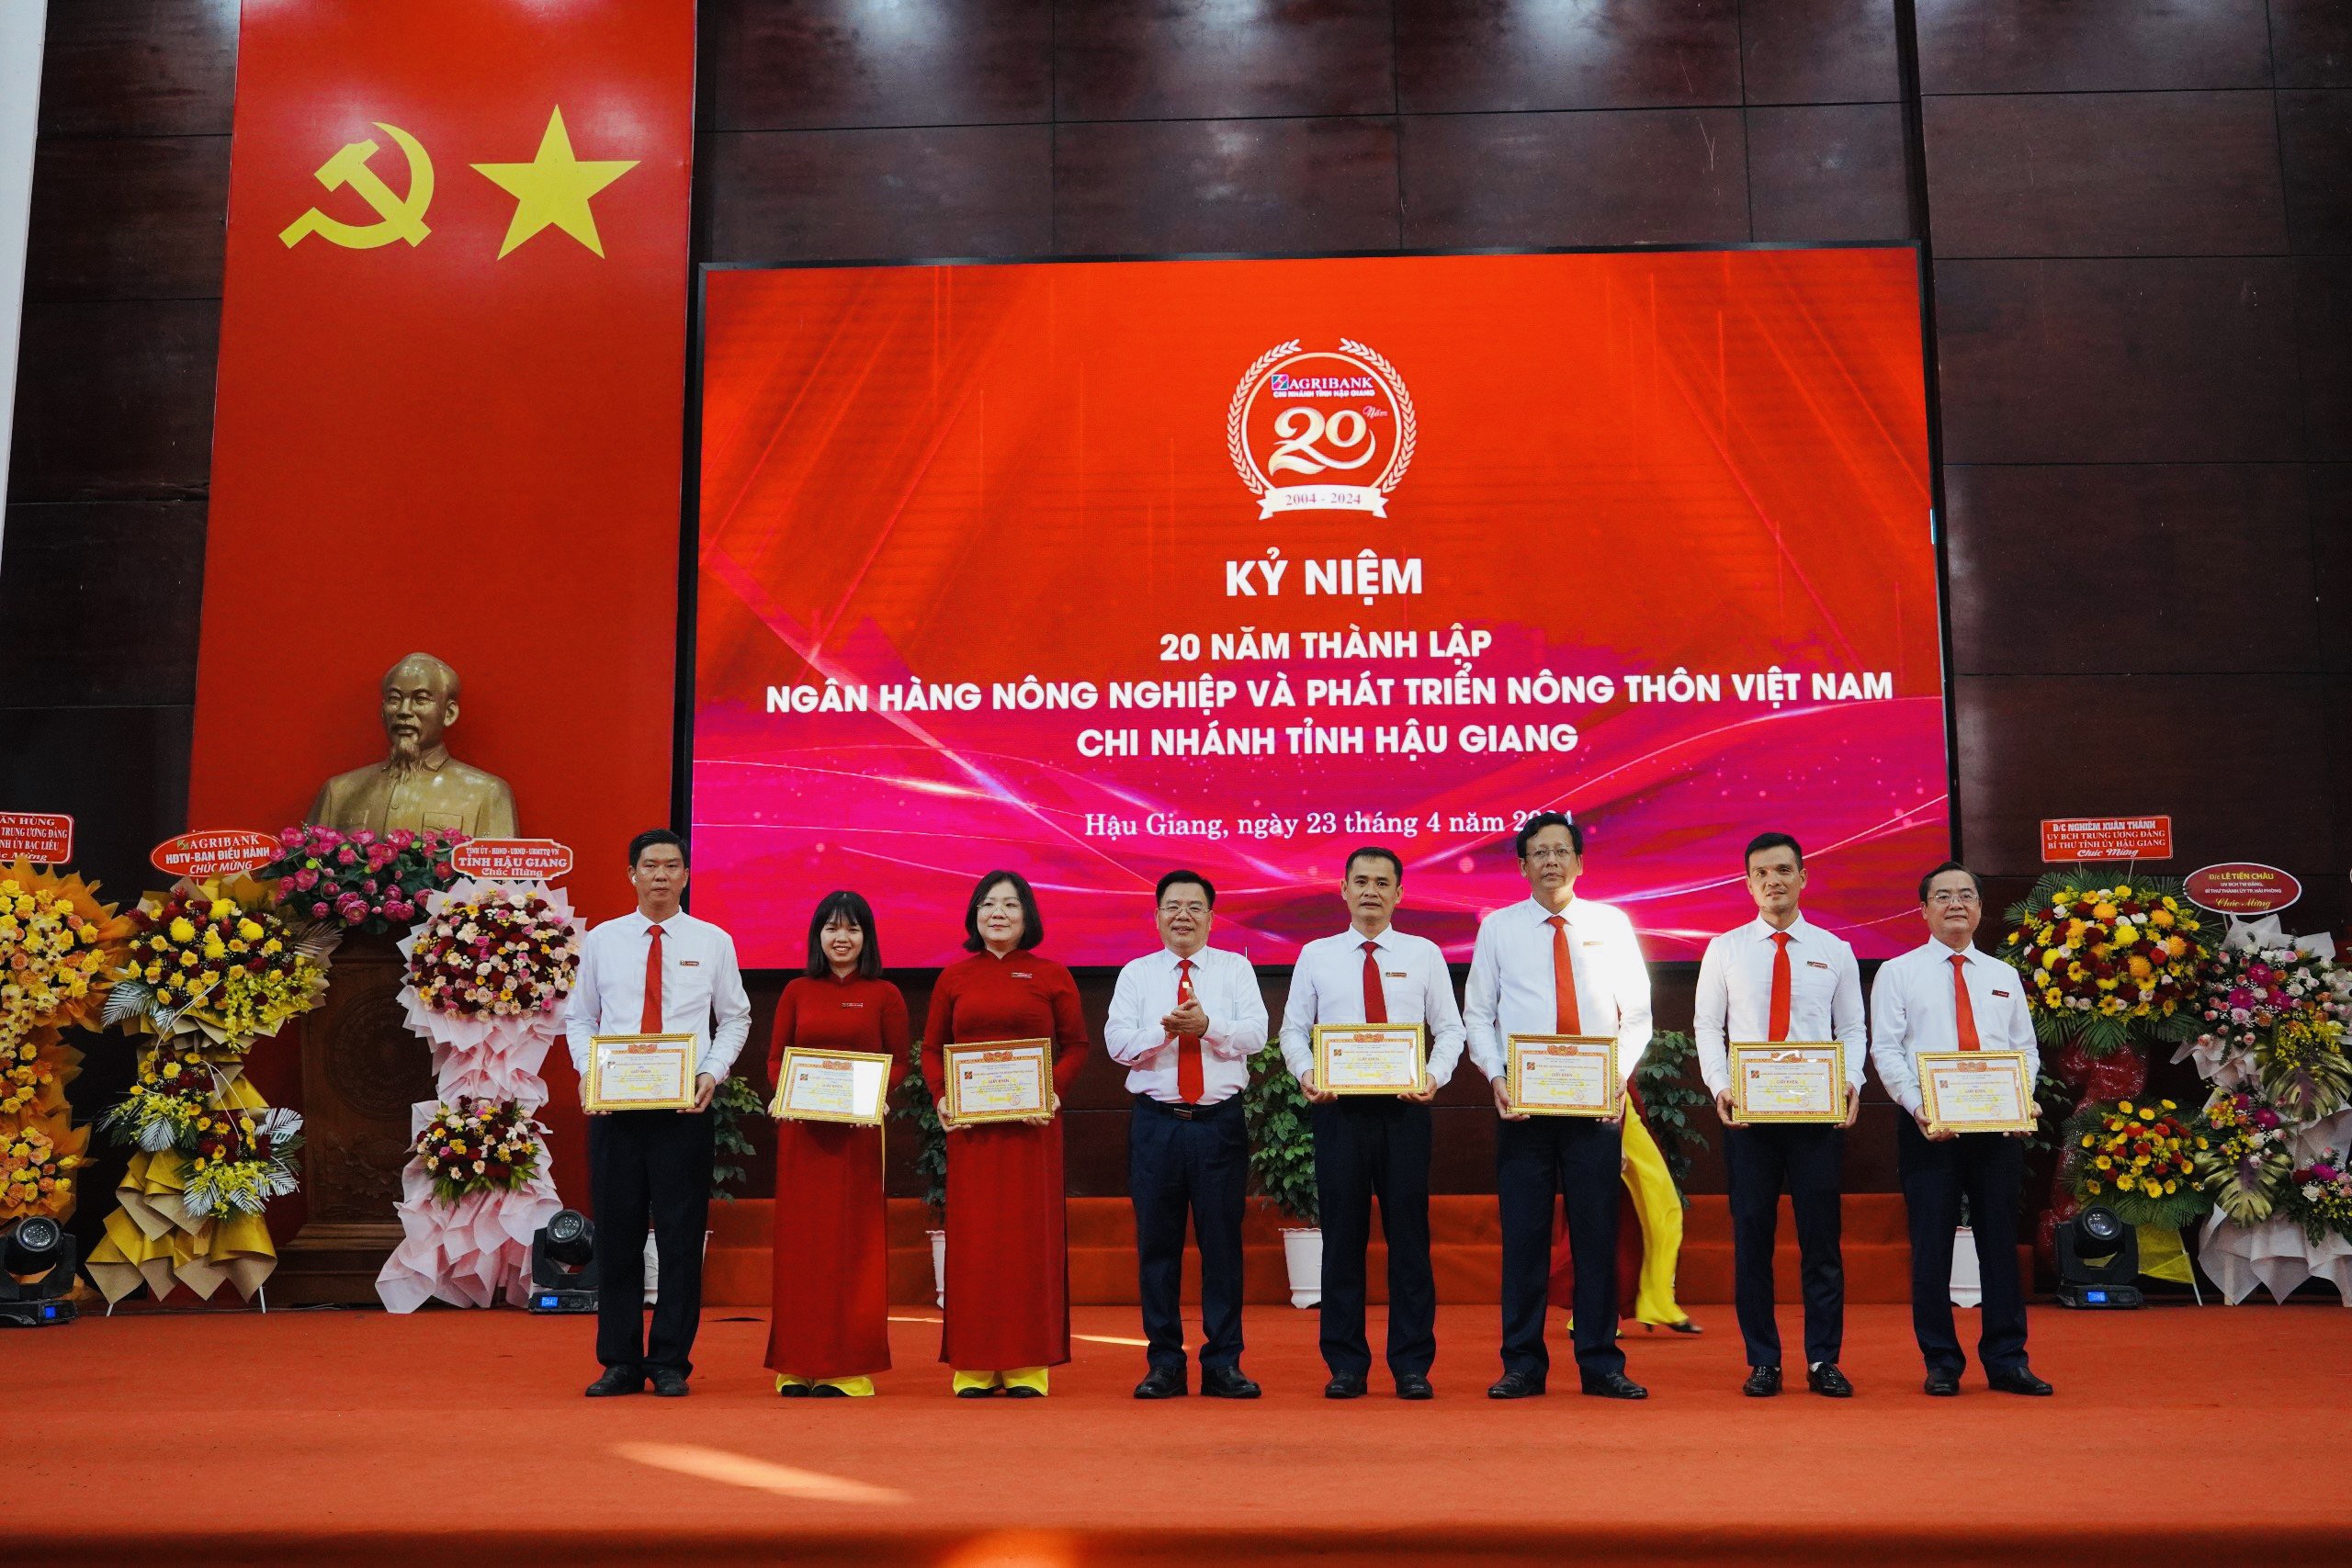 Agribank Chi nhánh tỉnh Hậu Giang vinh dự nhận bằng khen của Thủ tướng Chính phủ- Ảnh 5.